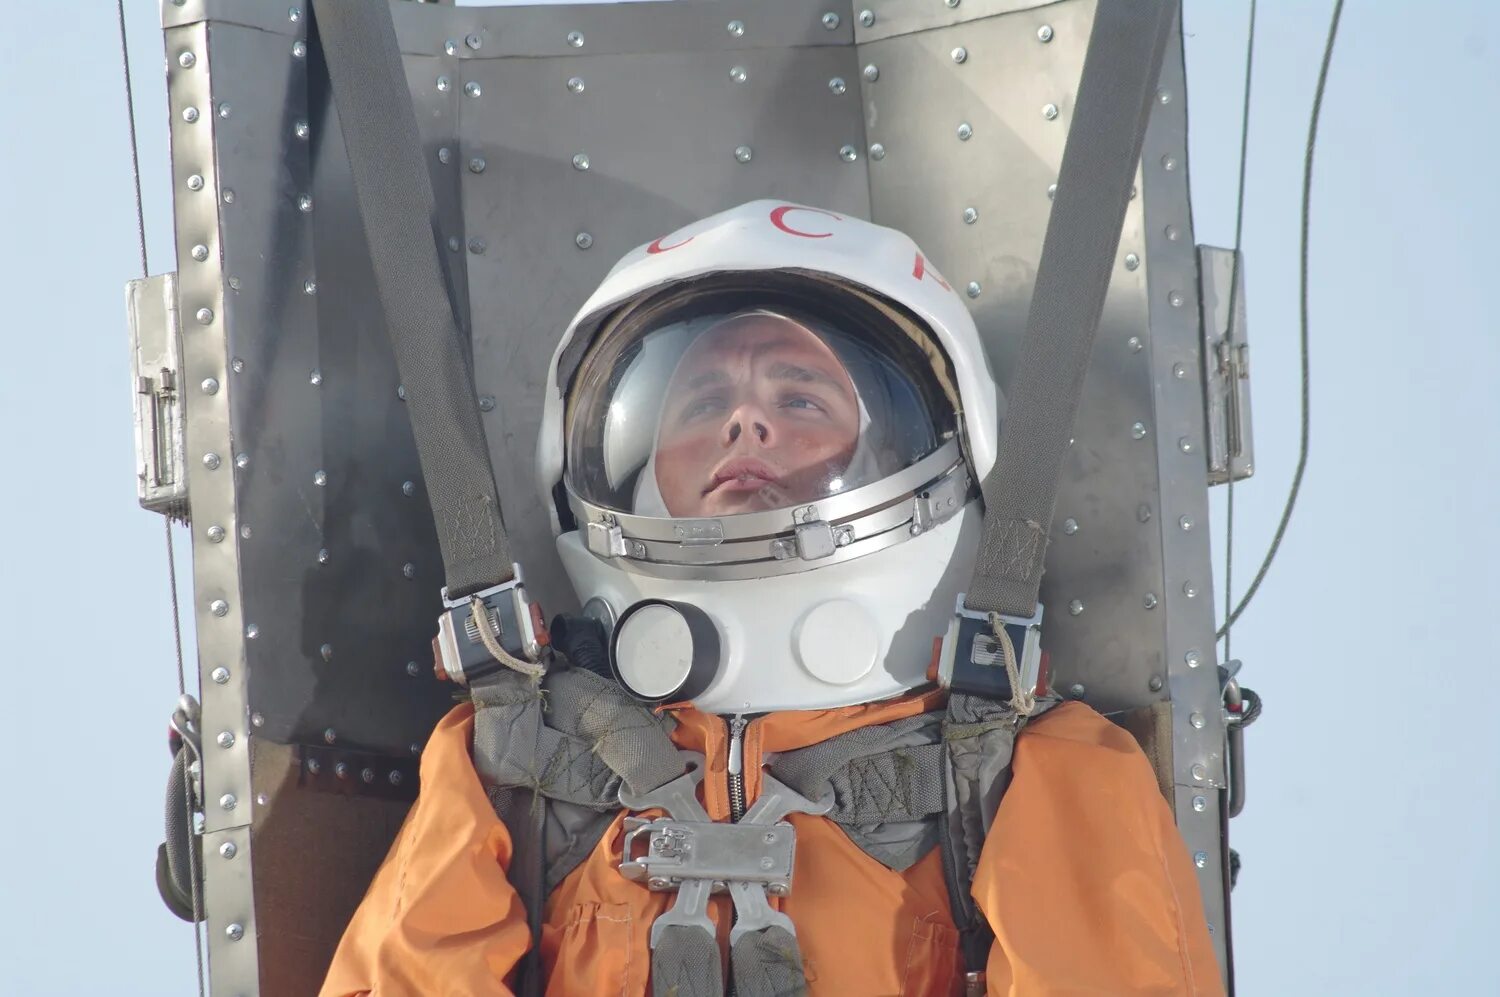 Запись первого полета в космос. Фото Юрия Гагарина в скафандре первый полет.